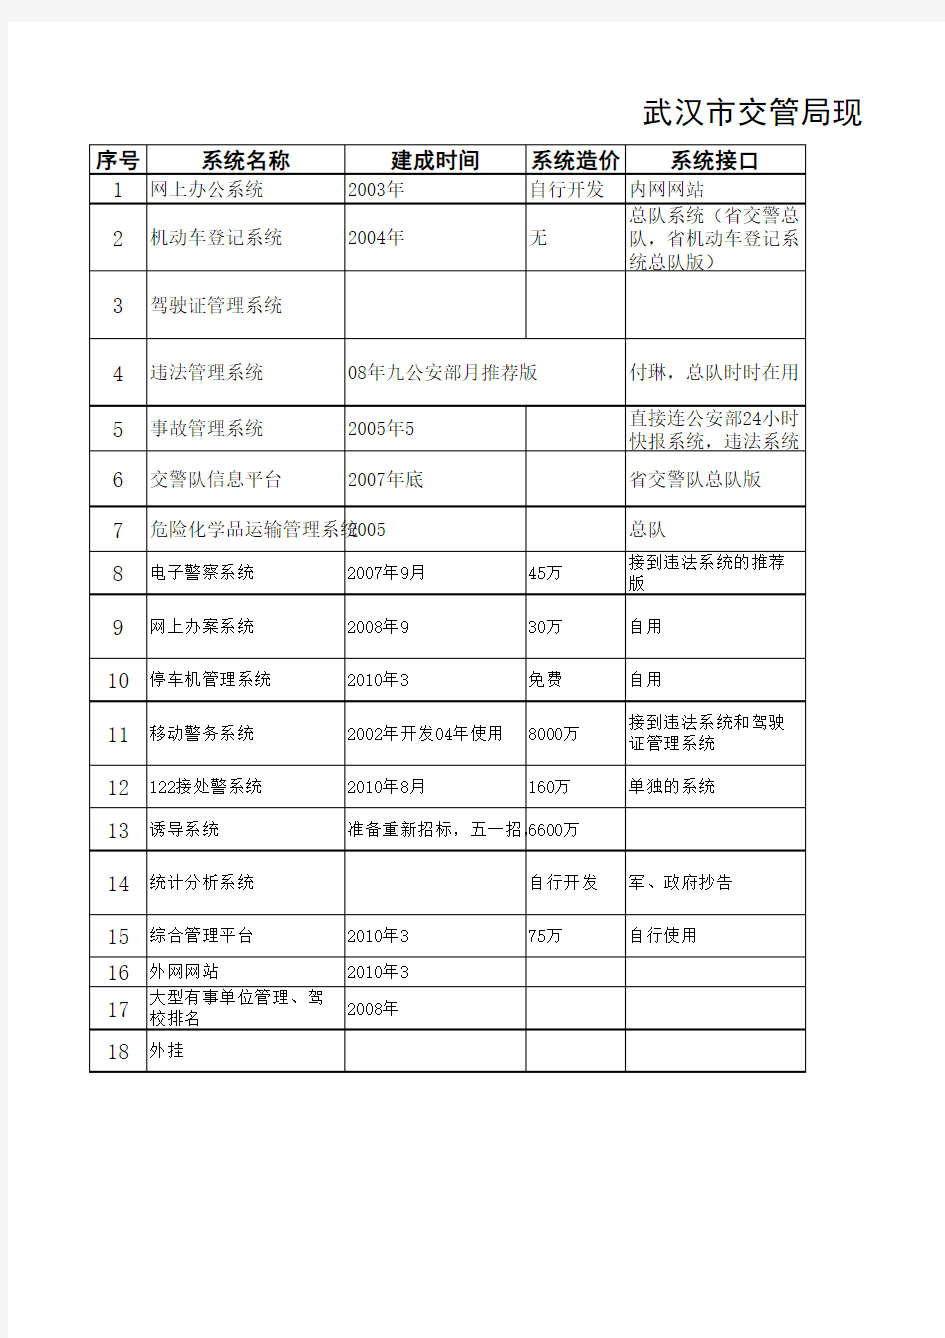 武汉市交管局现有信息化系统列表